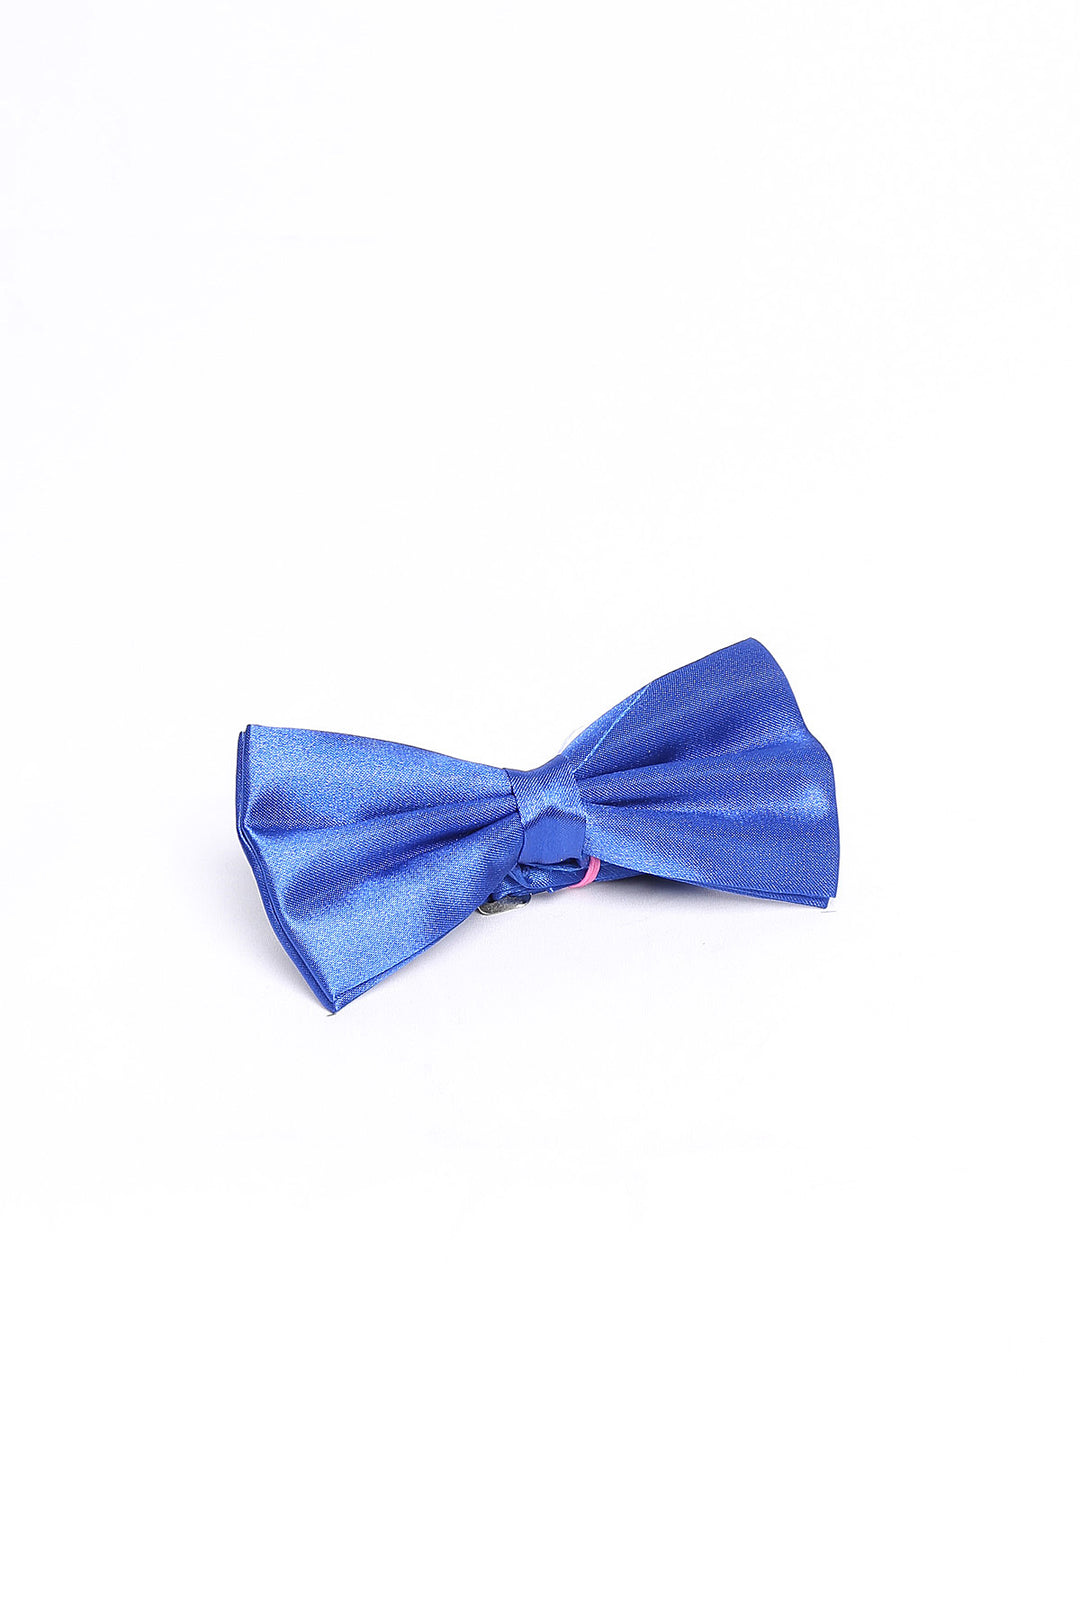 Classic Blue Men Bow Tie - Wessi